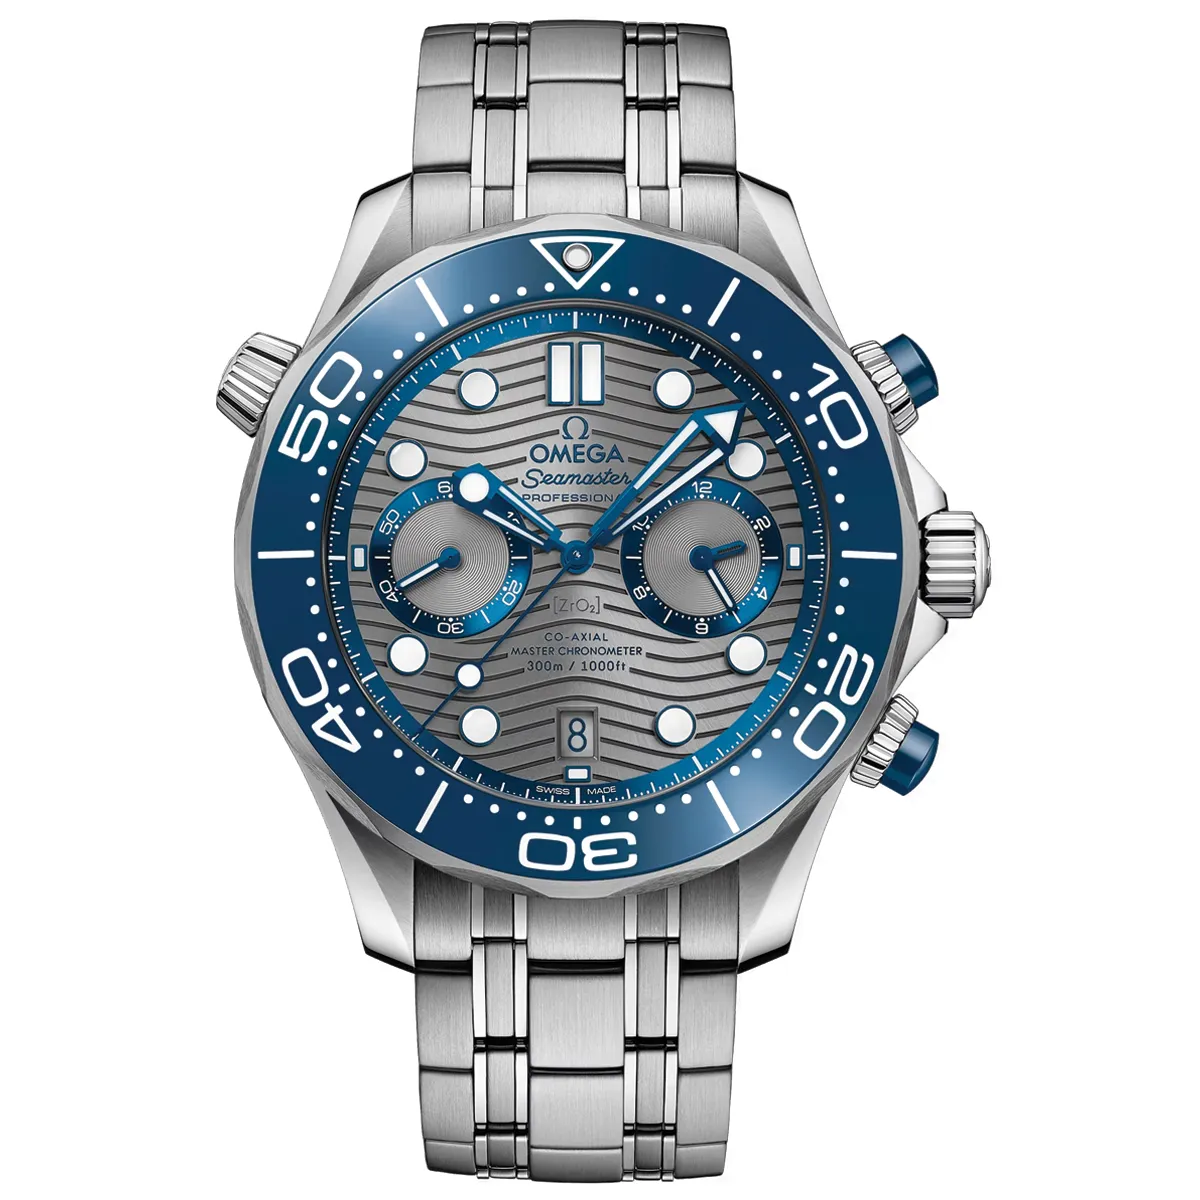 Đồng Hồ Omega Seamaster Diver Master Chronometer Chronograph 210.30.44.51.06.001 mặt số màu xám. Thiết kế lộ cơ. Dây đeo và thân vỏ bằng thép không gỉ.